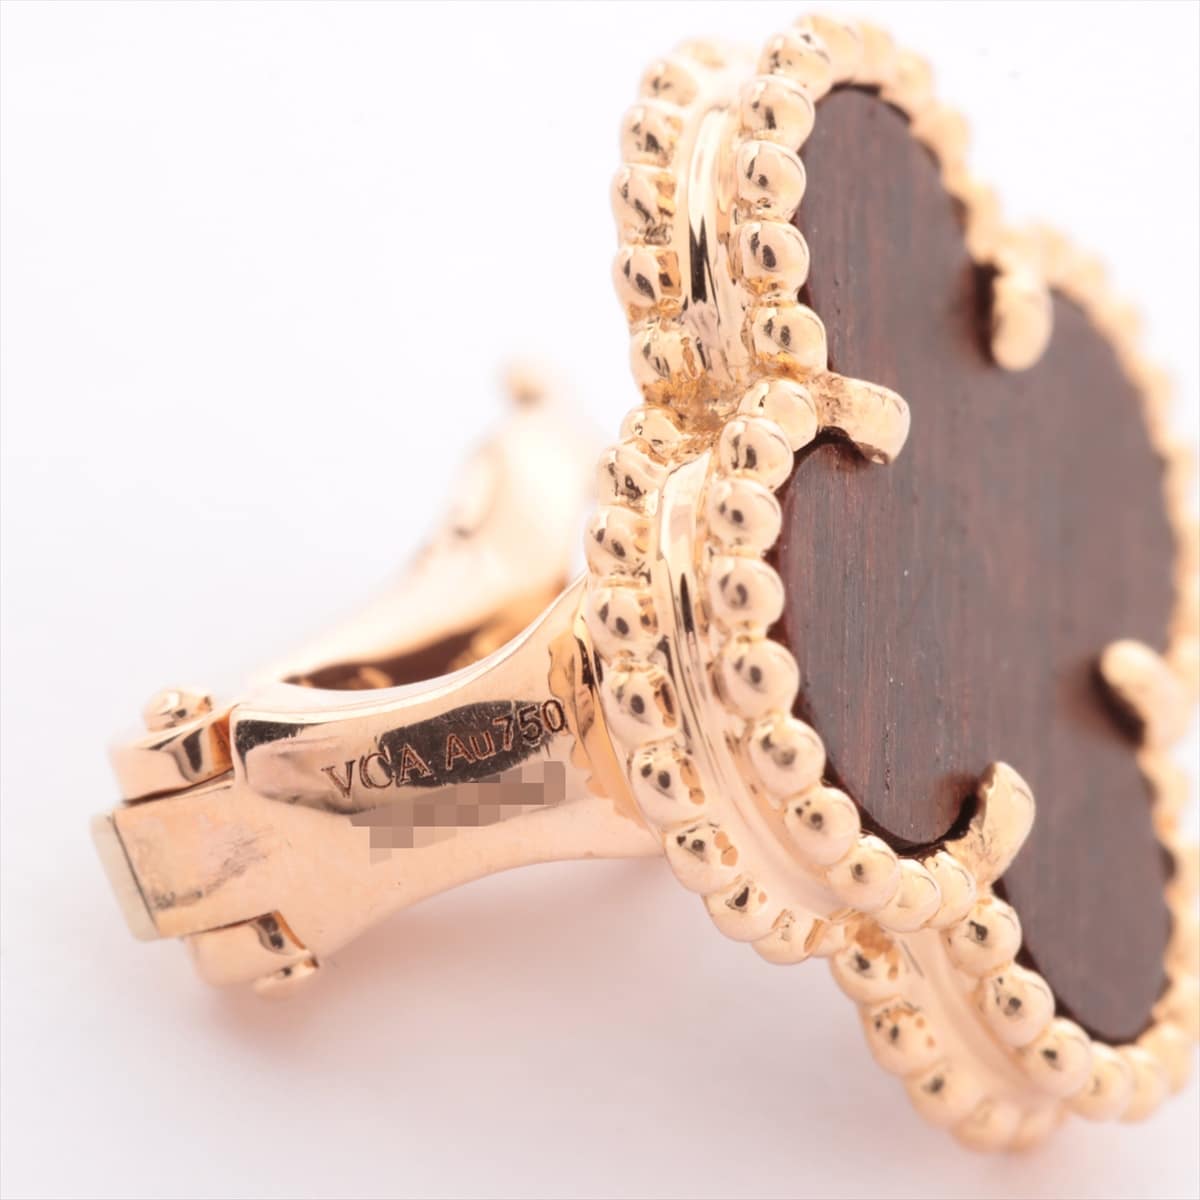 Van Cleef & Arpels Van Cleef & Arpels Vintage Alhambra Piercing jewelry 750PG